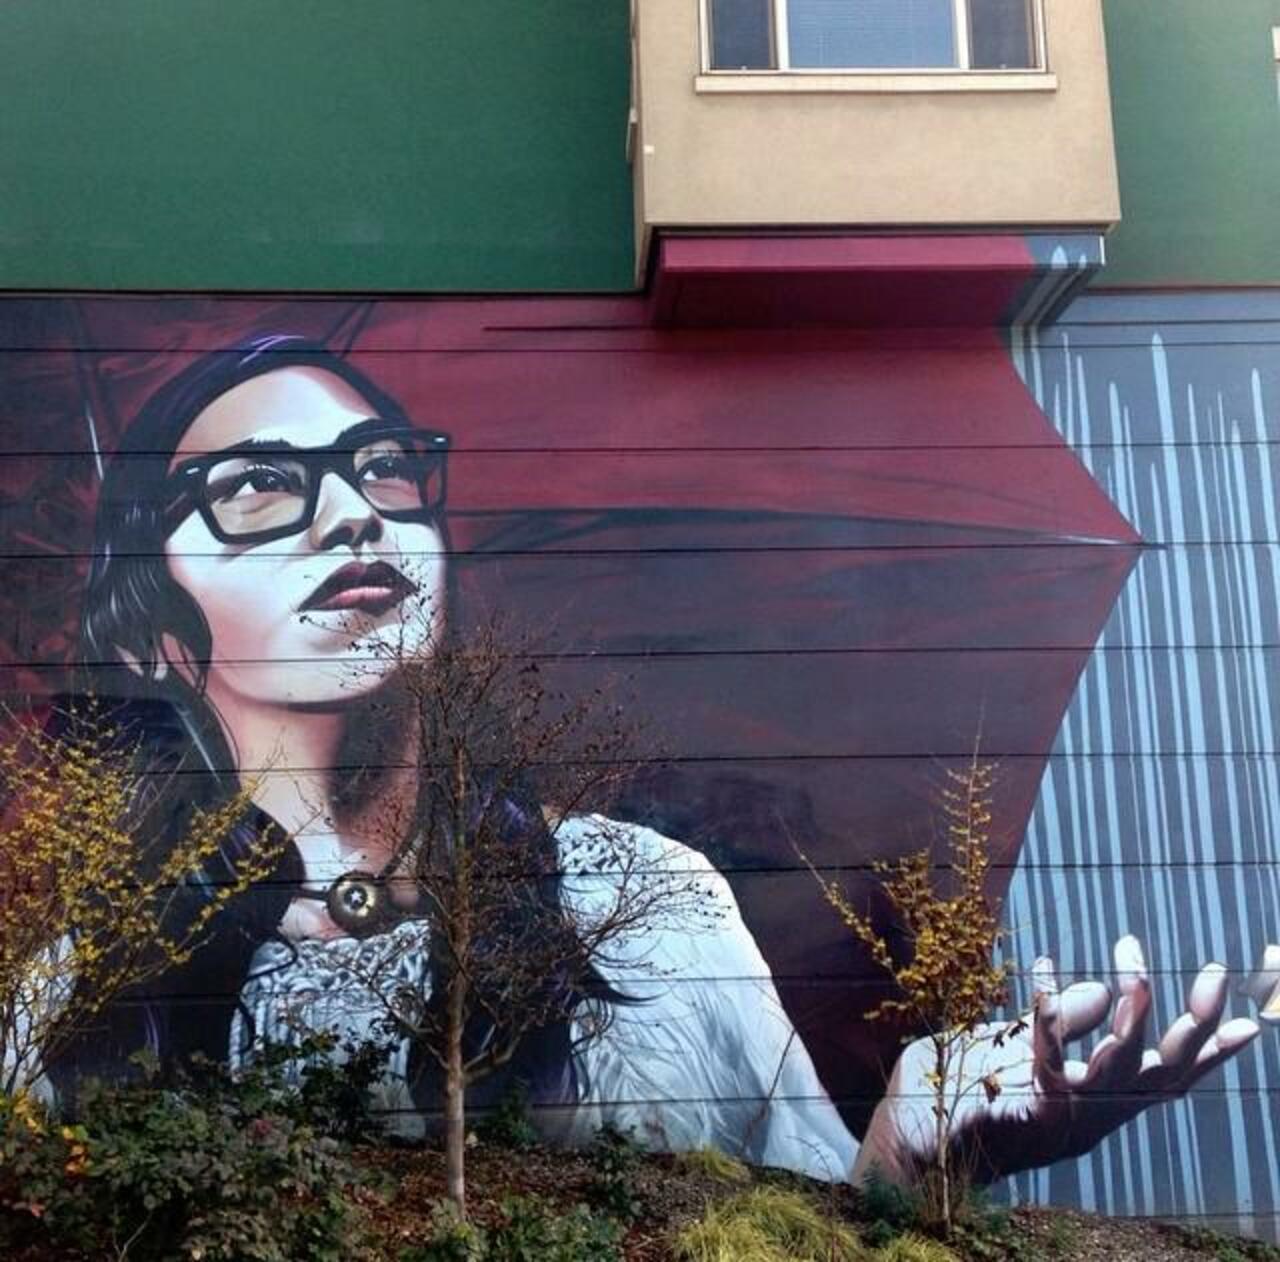 Artist Eras MFK Street Art piece in Capitol Hill, Seattle

#art #mural #graffiti #streetart http://t.co/15C8dkpYAm